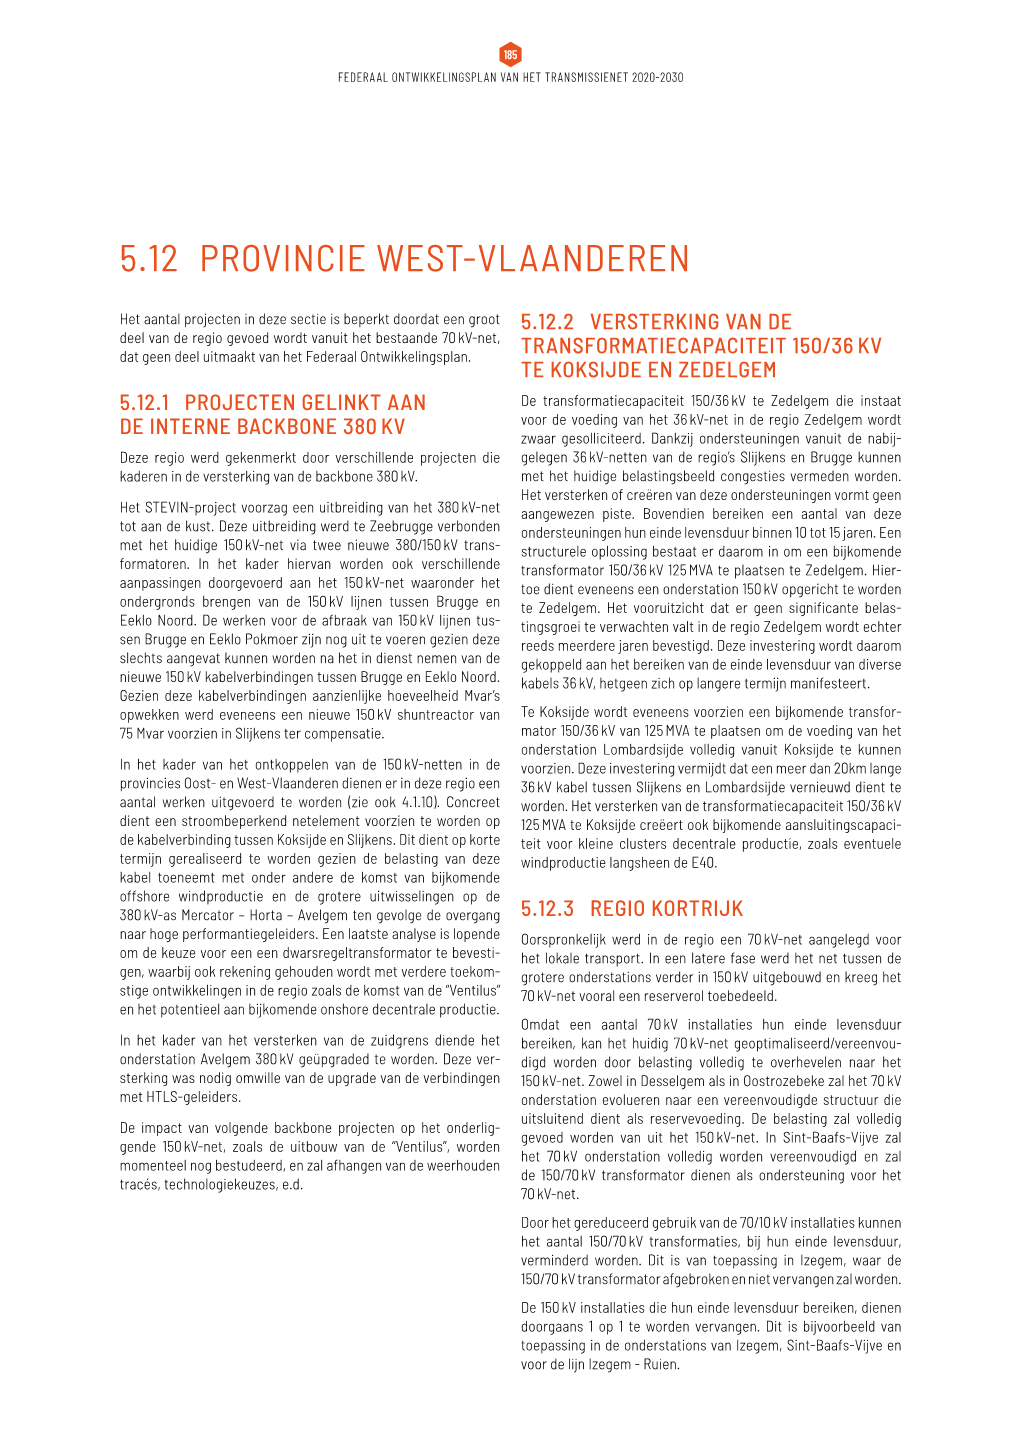 5.12 Provincie West-Vlaanderen